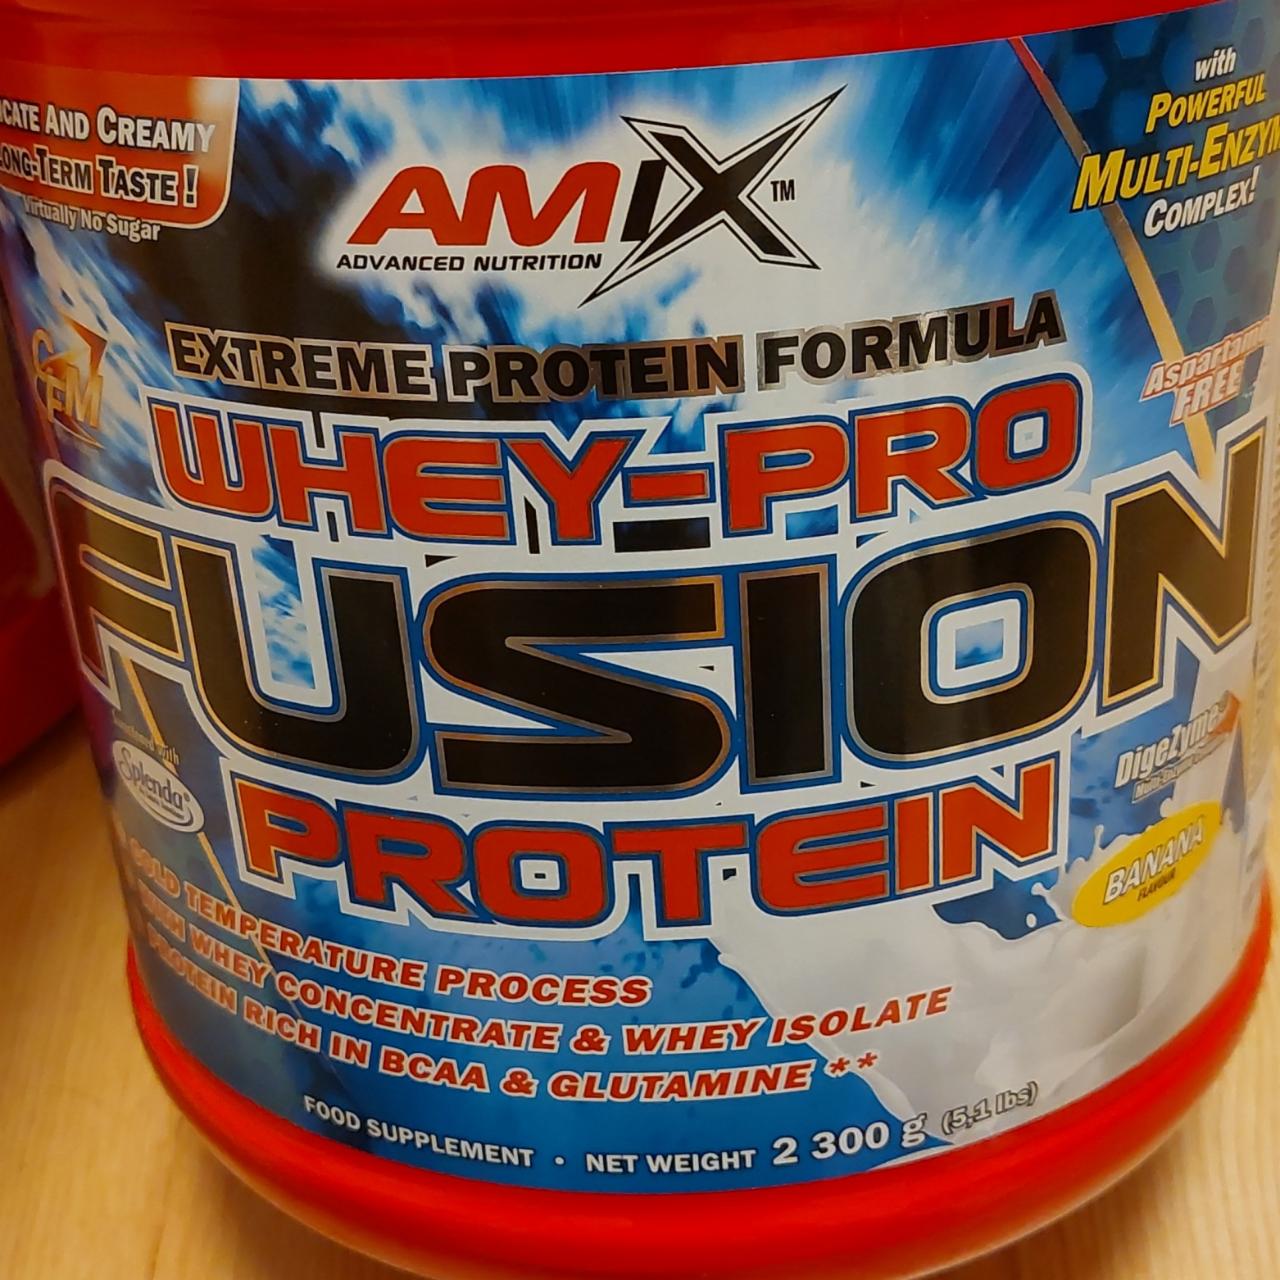 Képek - Whey-pro fusion Protein banana flavour AmiX